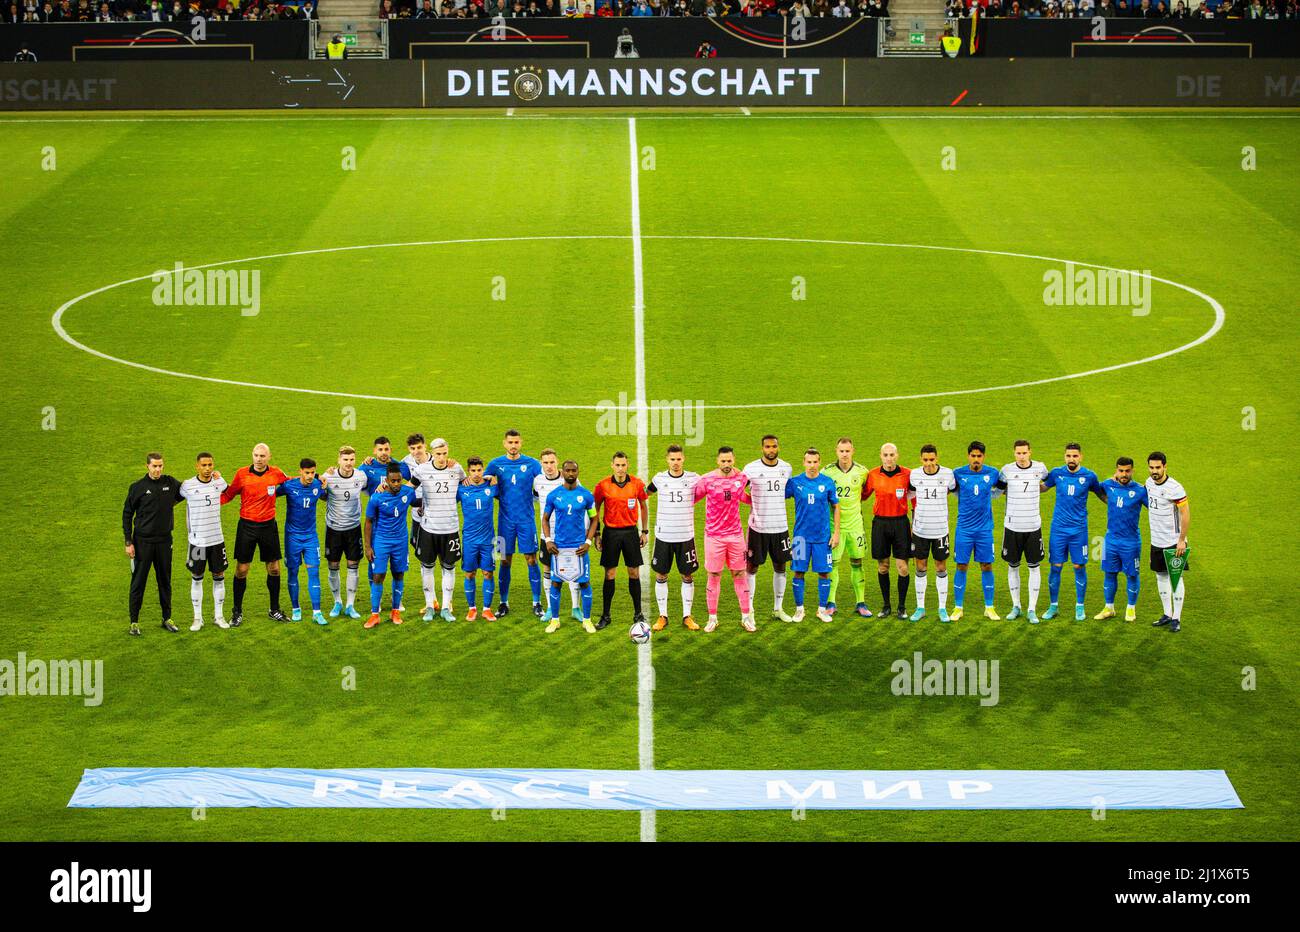 Mannschaften von Deutschland und  Israel stehen gemeinsam für den Frieden  26.03.2022, Fussball; DFB, Saison 2021/22  Foto: Moritz Müller  Copyright ( Stock Photo